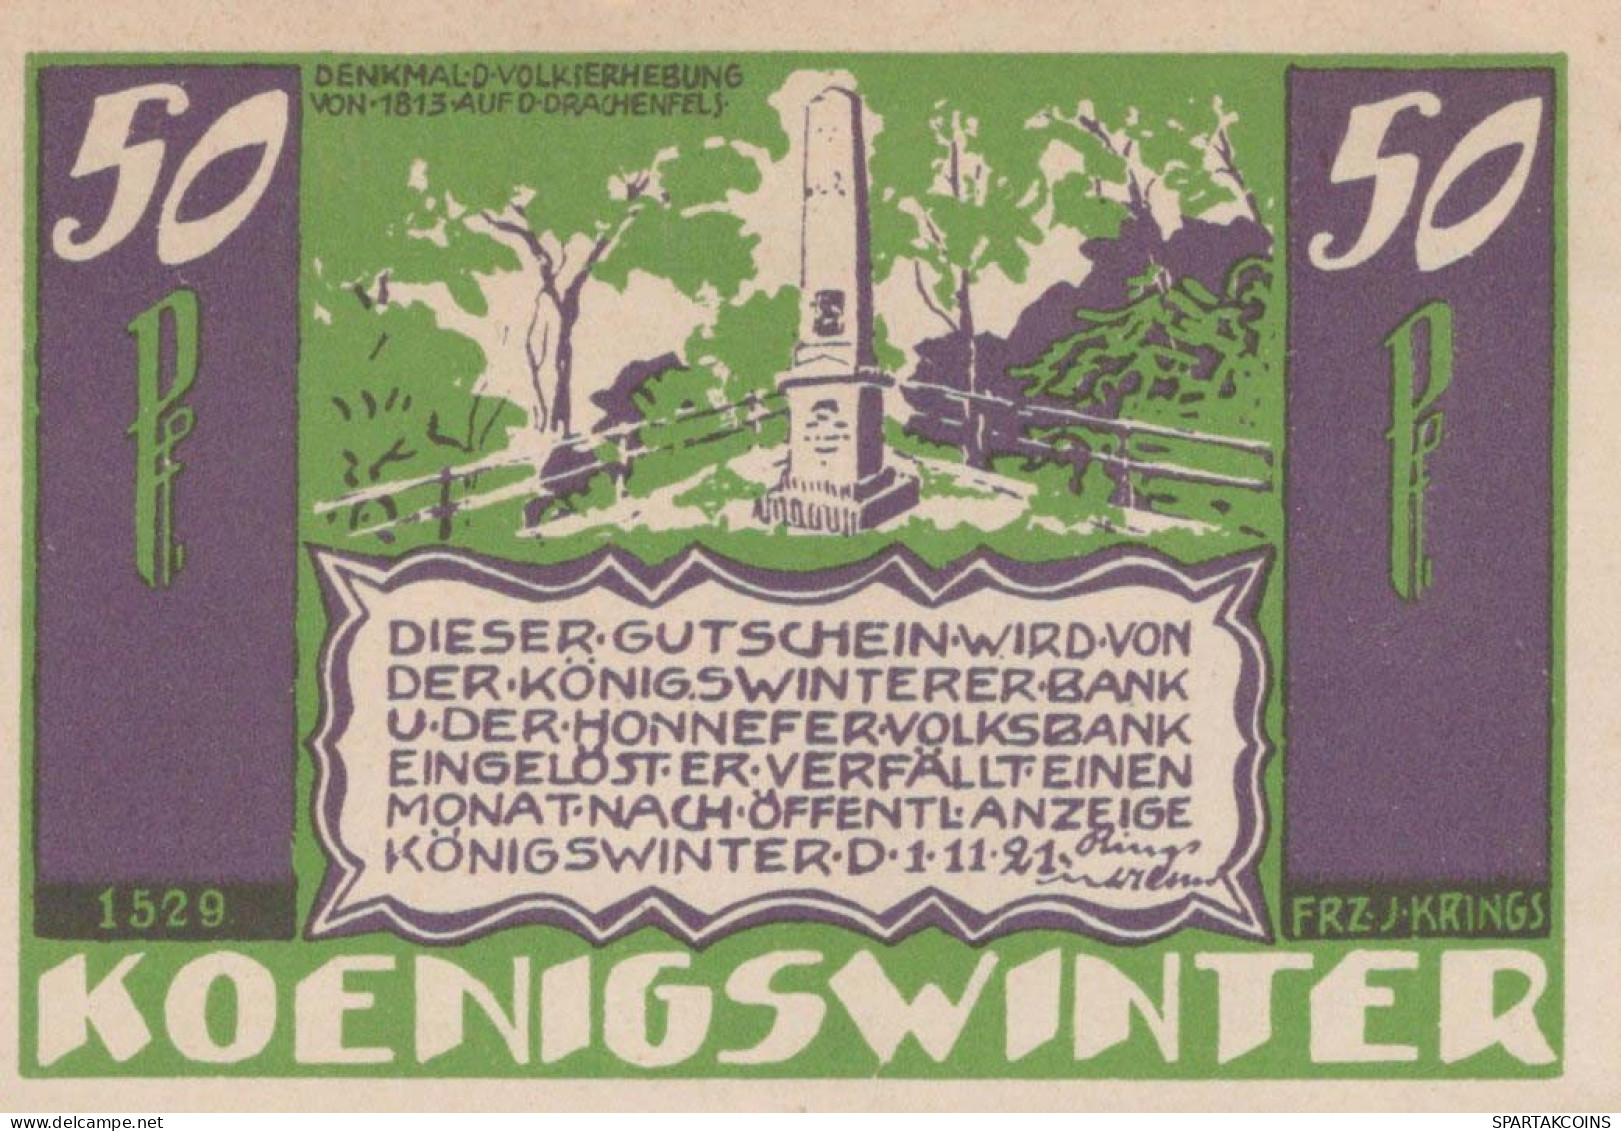 50 PFENNIG 1921 Stadt KoNIGSWINTER Rhine UNC DEUTSCHLAND Notgeld Banknote #PI642 - [11] Local Banknote Issues